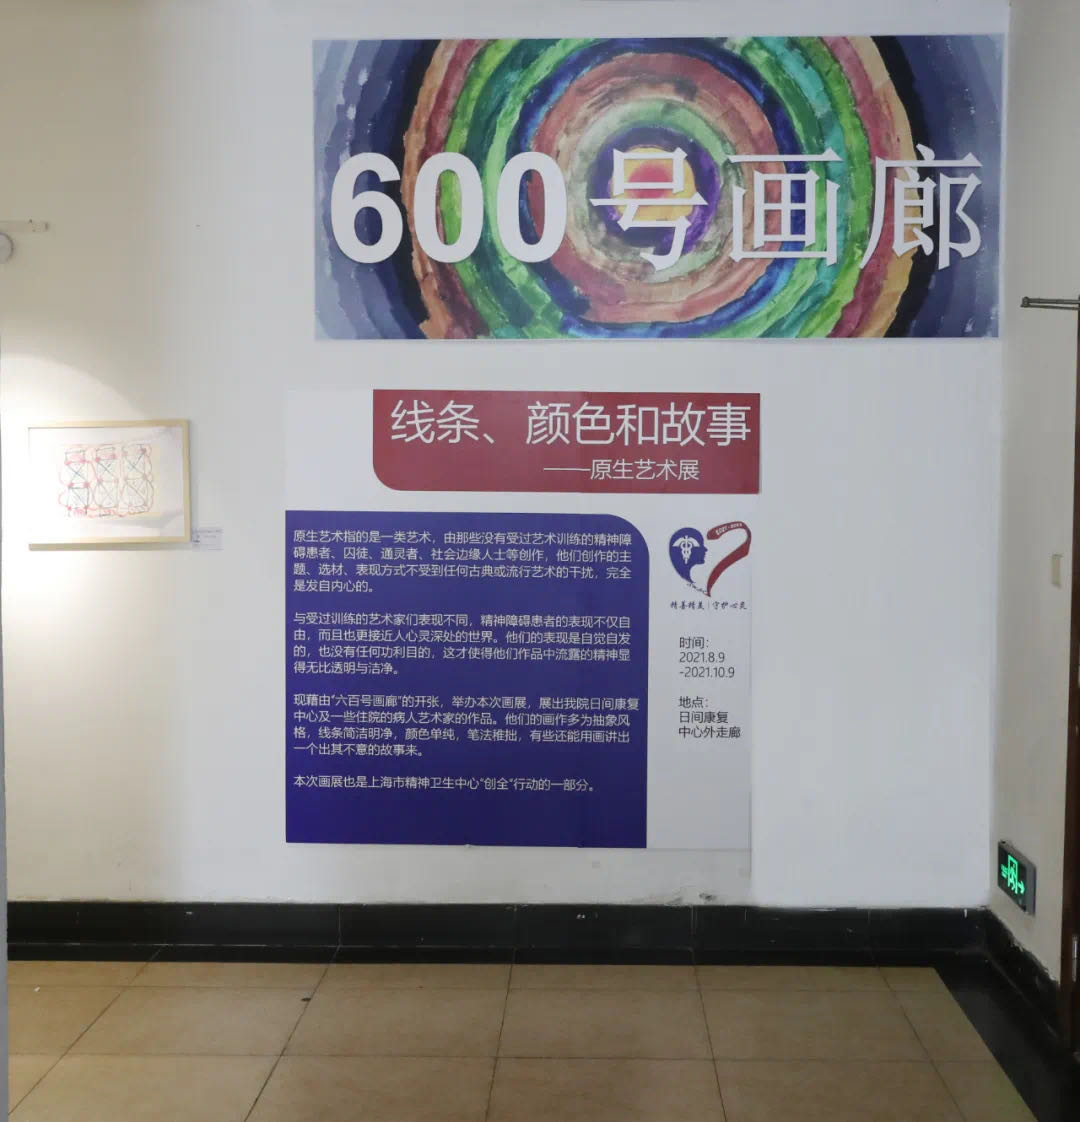 上海市精神卫生中心开设「600 号画廊」